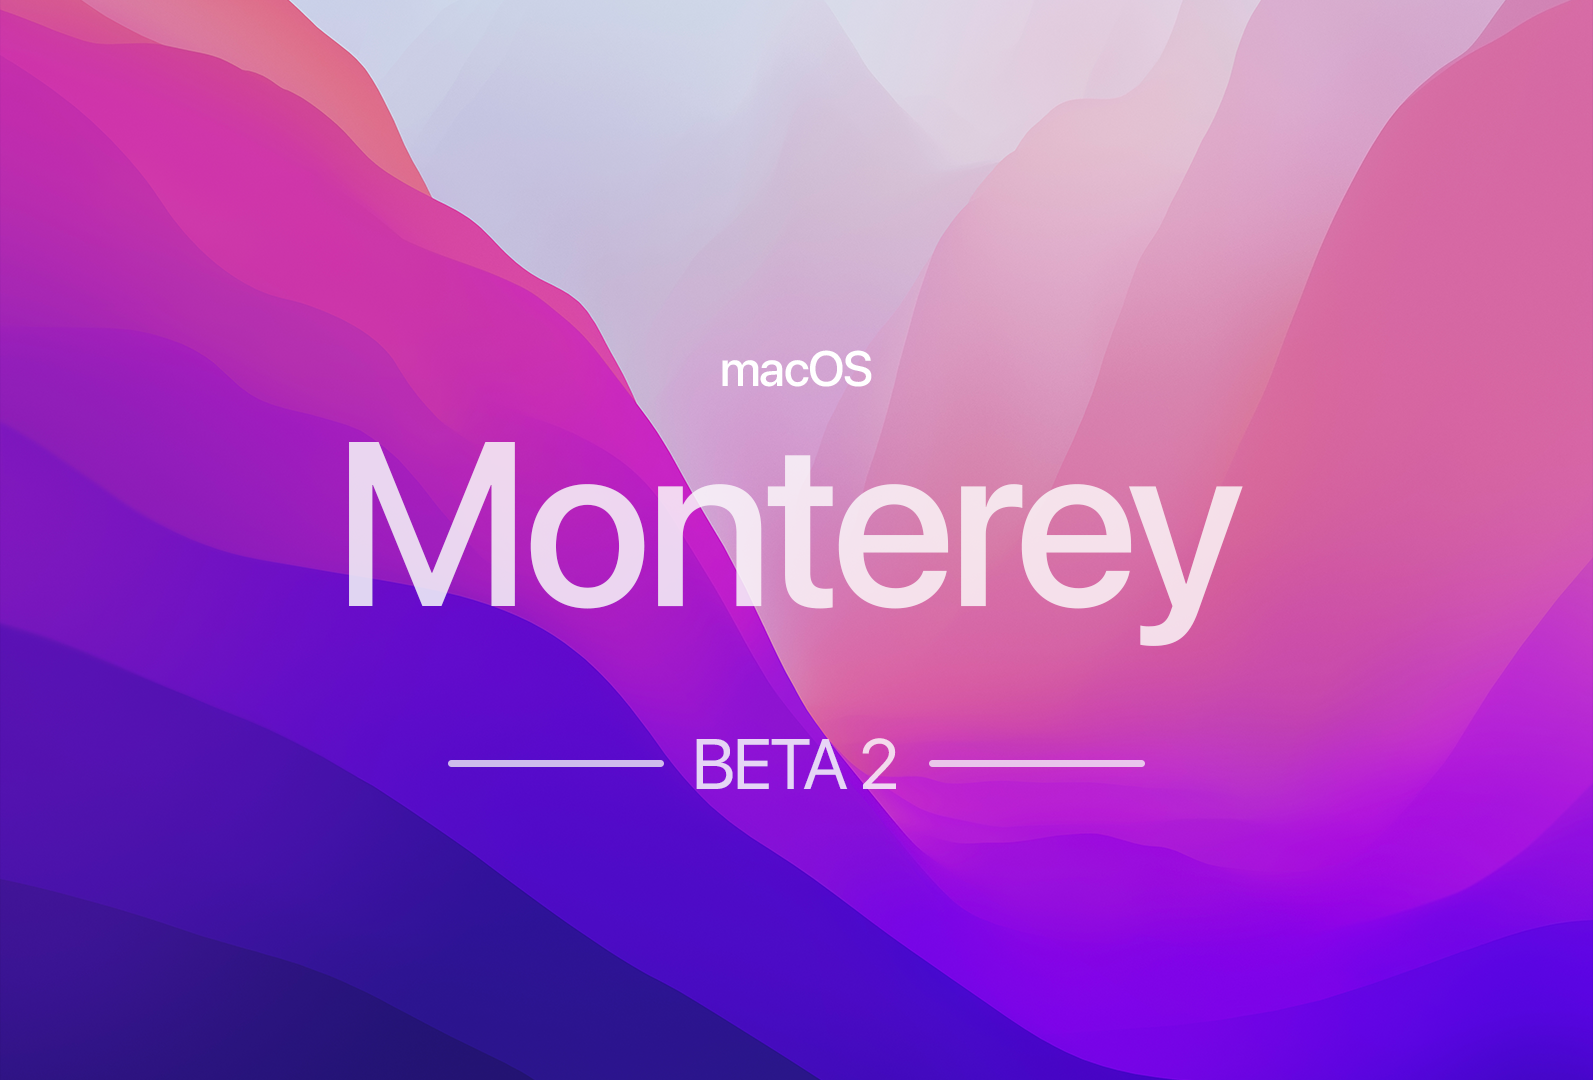 Apple lança beta 2 do macOS 12 Monterey. Conhece as novidades! post image